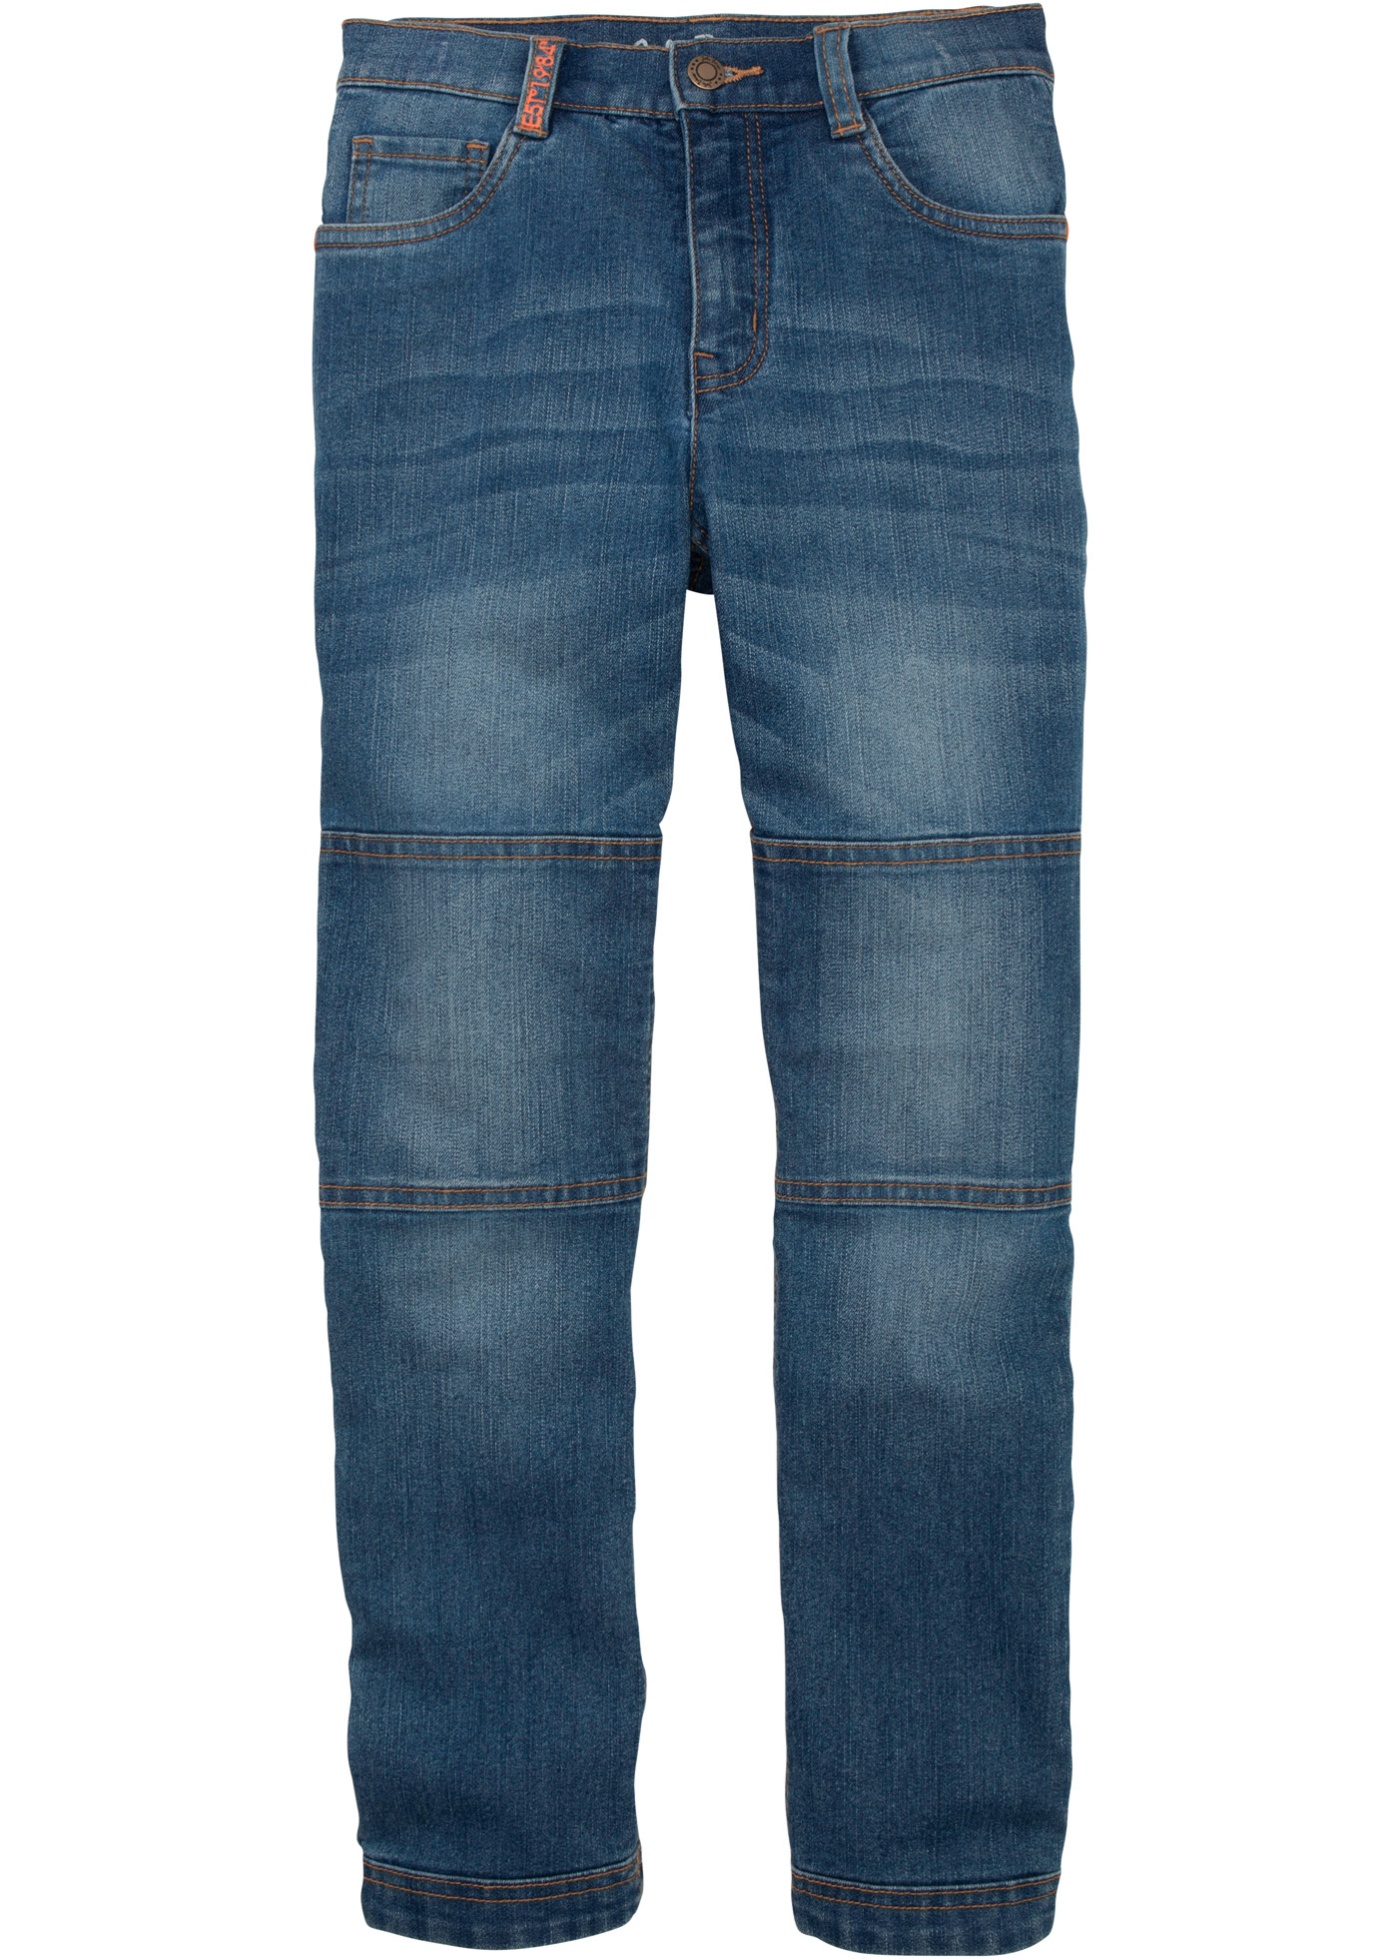 Jungen Jeans mit verstärkter Kniepartie, Regular Fit von bonprix